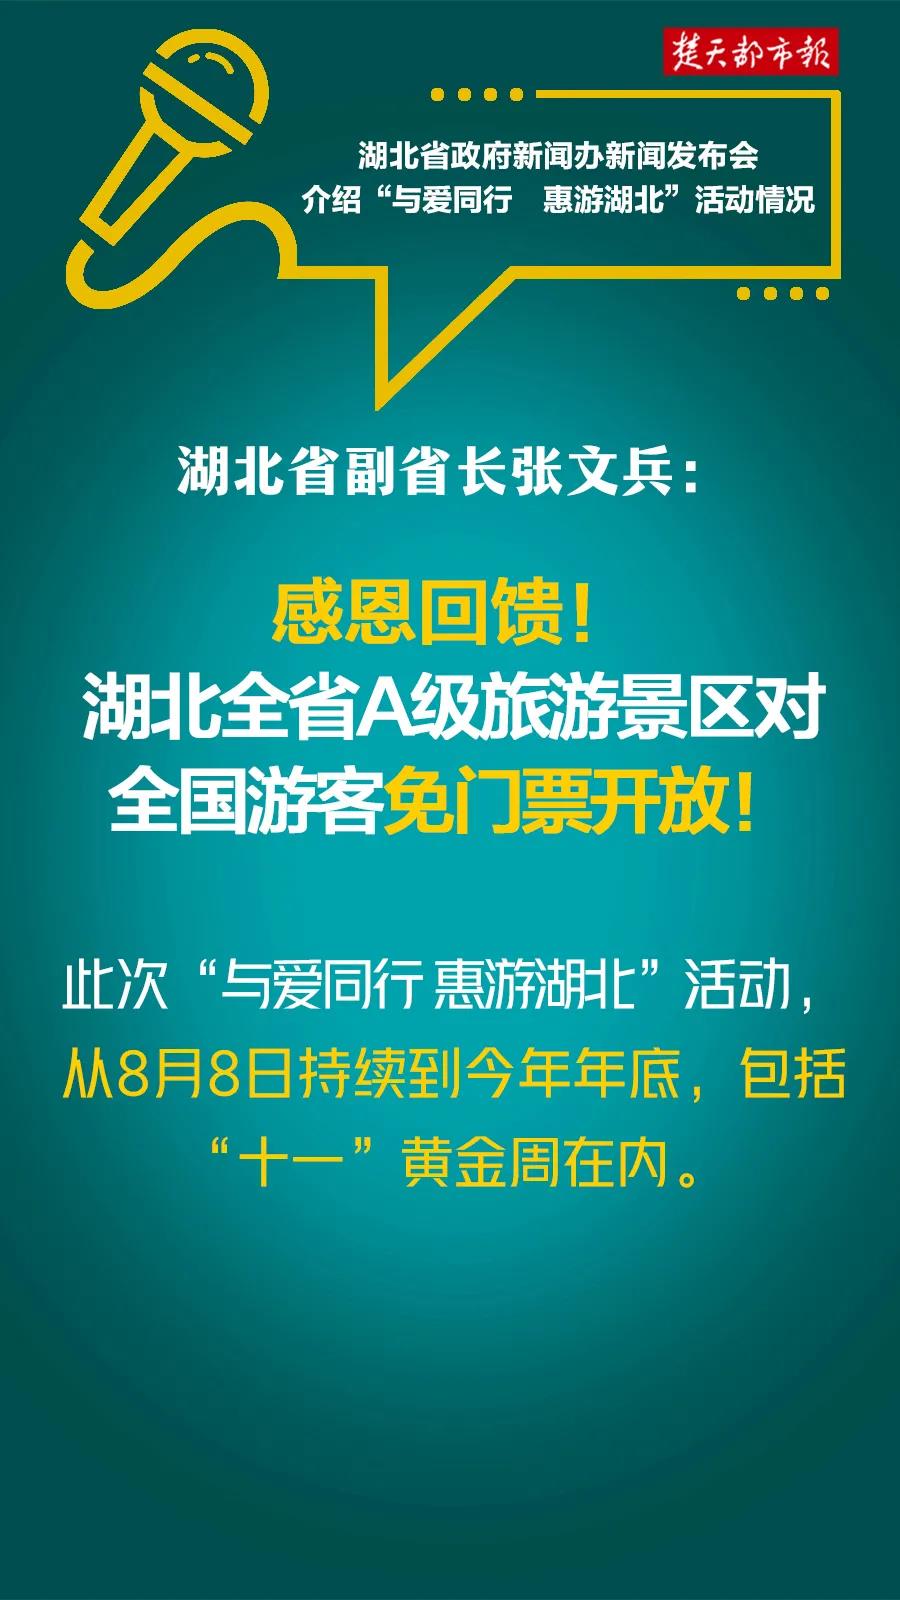 2020与爱同行惠游湖北活动官网版地址app图片1